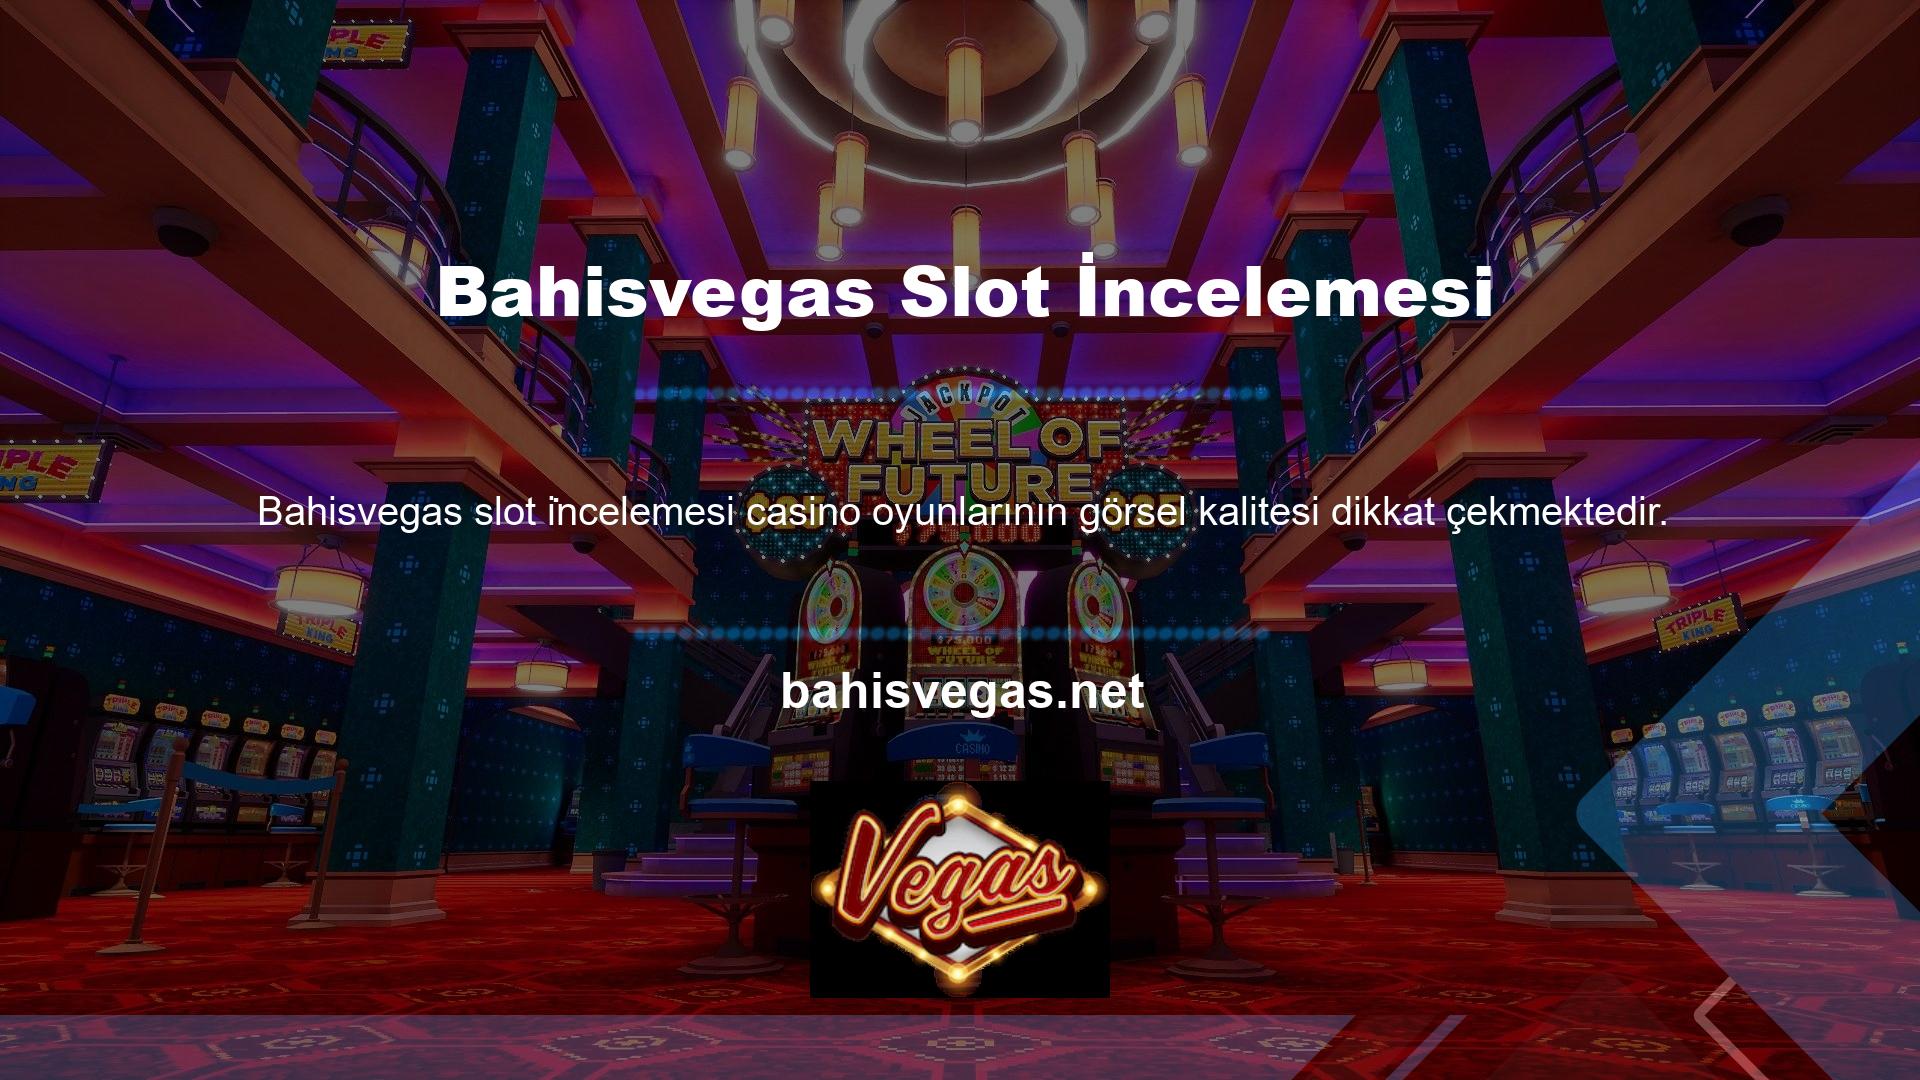 Bu sitede sunulan casino oyun seçeneklerinin görsel kalitesi ve verimliliği dikkat çekicidir